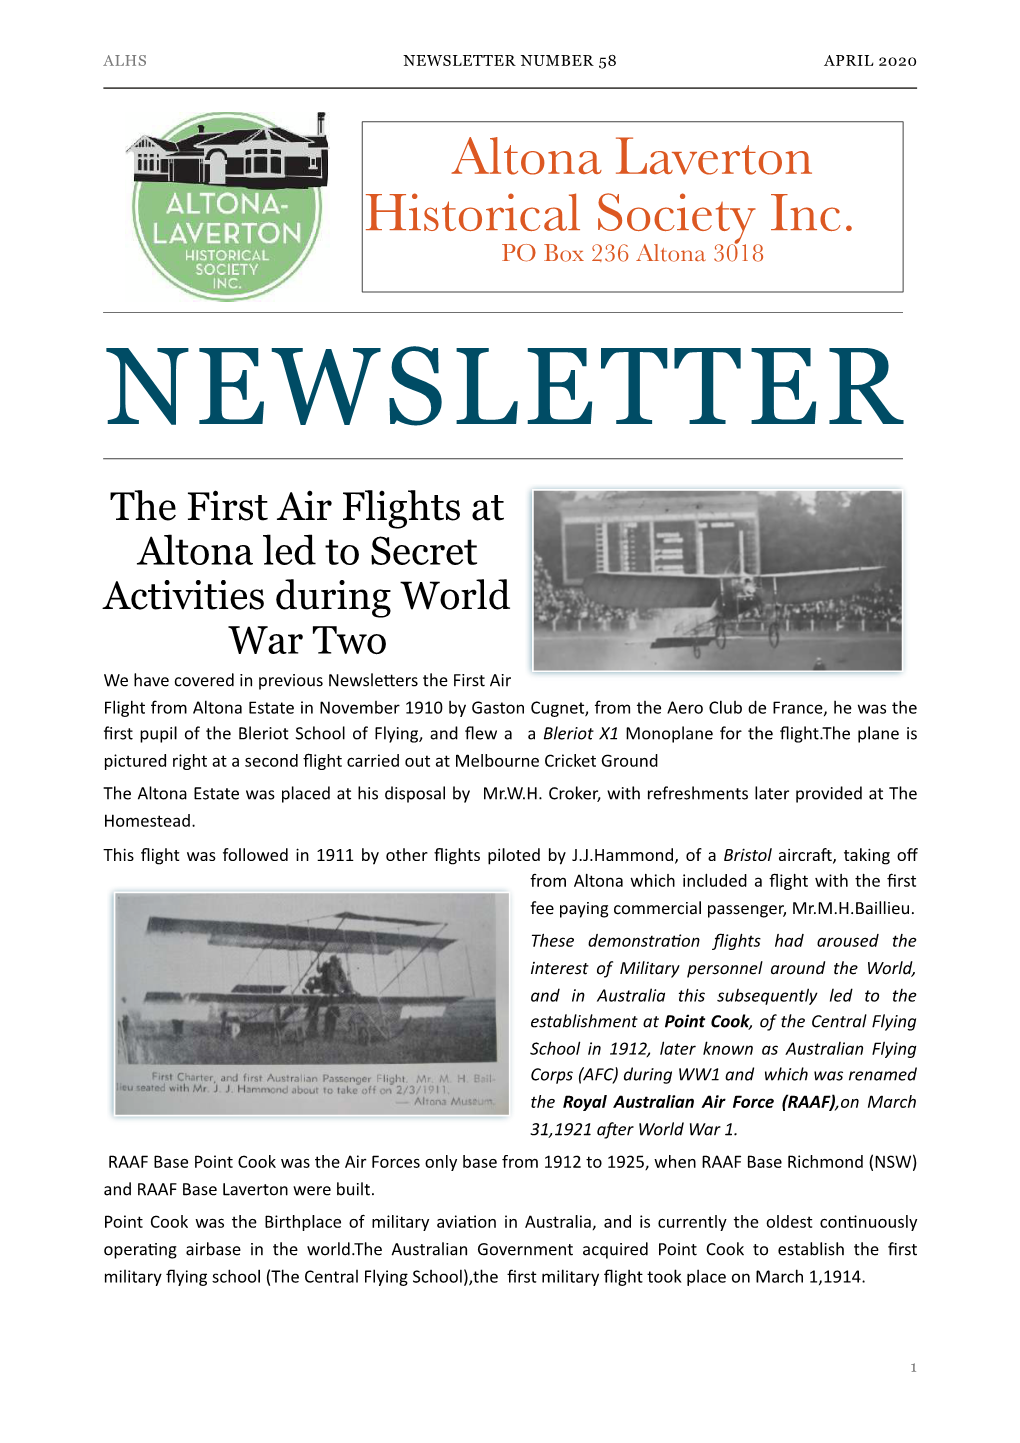 ALHS Newsletter 58